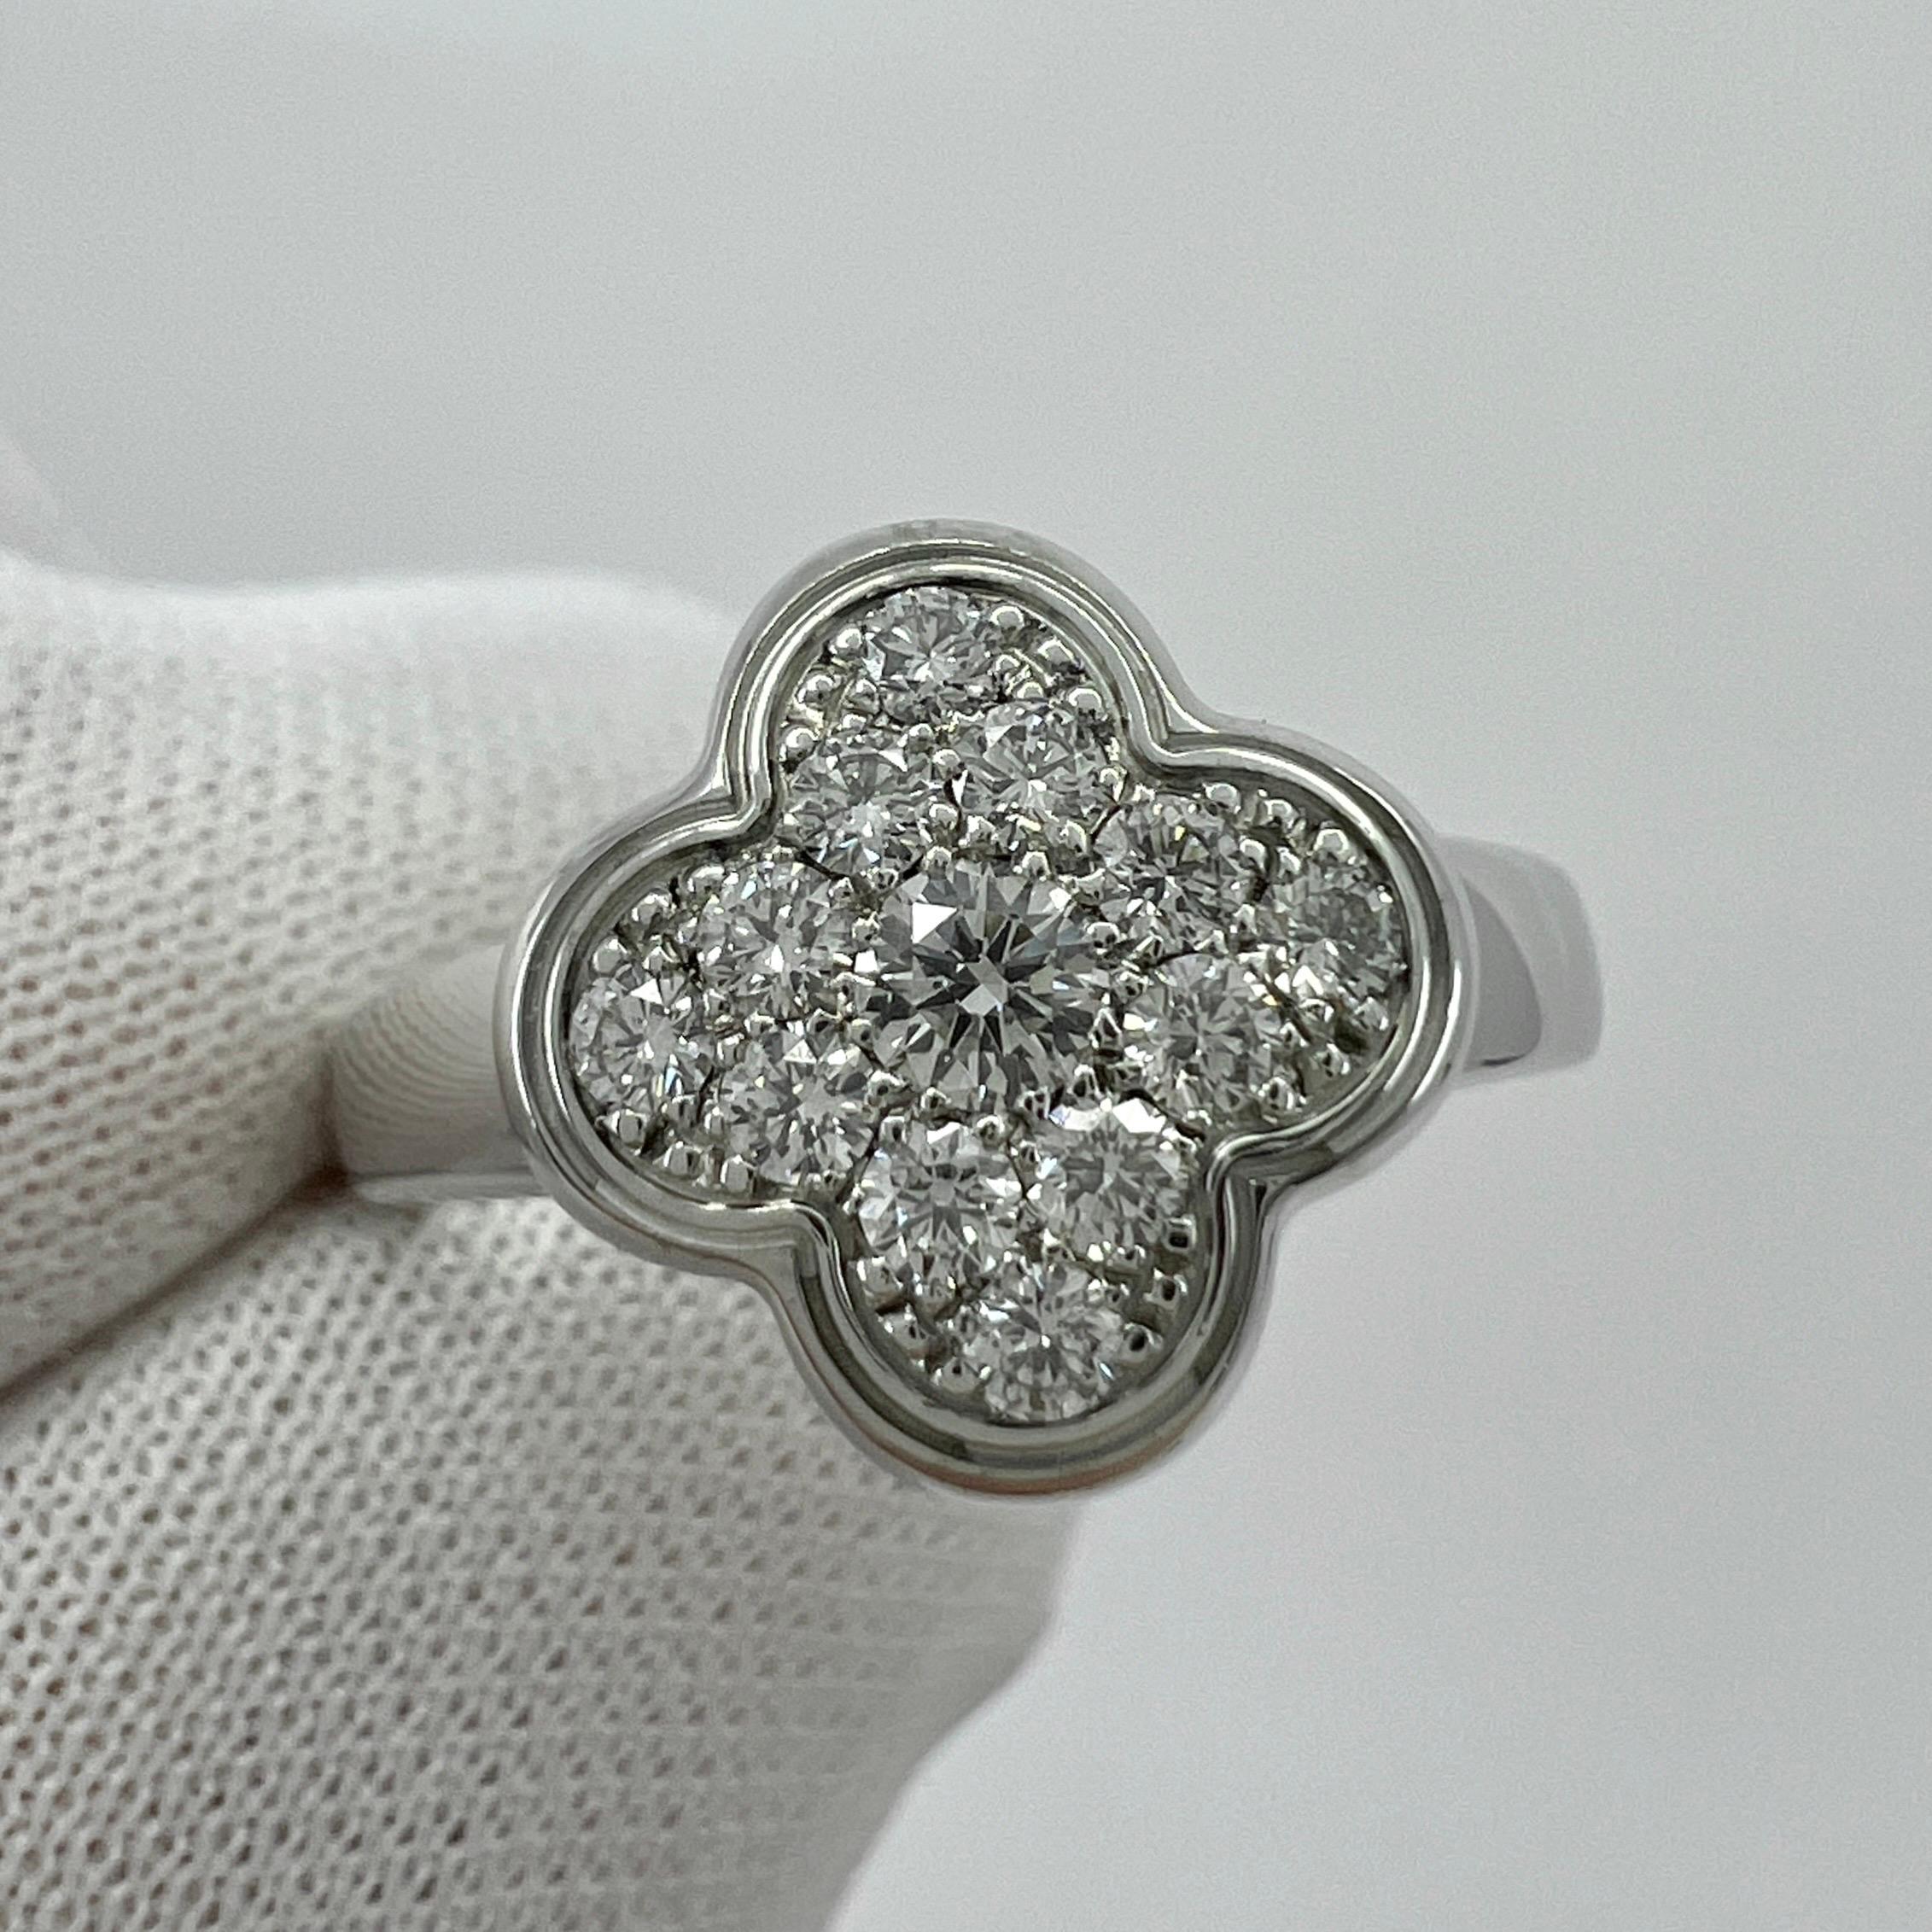 Vintage Van Cleef & Arpels Pure Alhambra Diamond 18 Karat Weißgold Ring.

Ein atemberaubender Vintage-Ring aus der Pure Alhambra-Reihe des französischen Juwelierhauses Van Cleef & Arpels. 

Das klassische Blumenmotiv, aber gefüllt mit